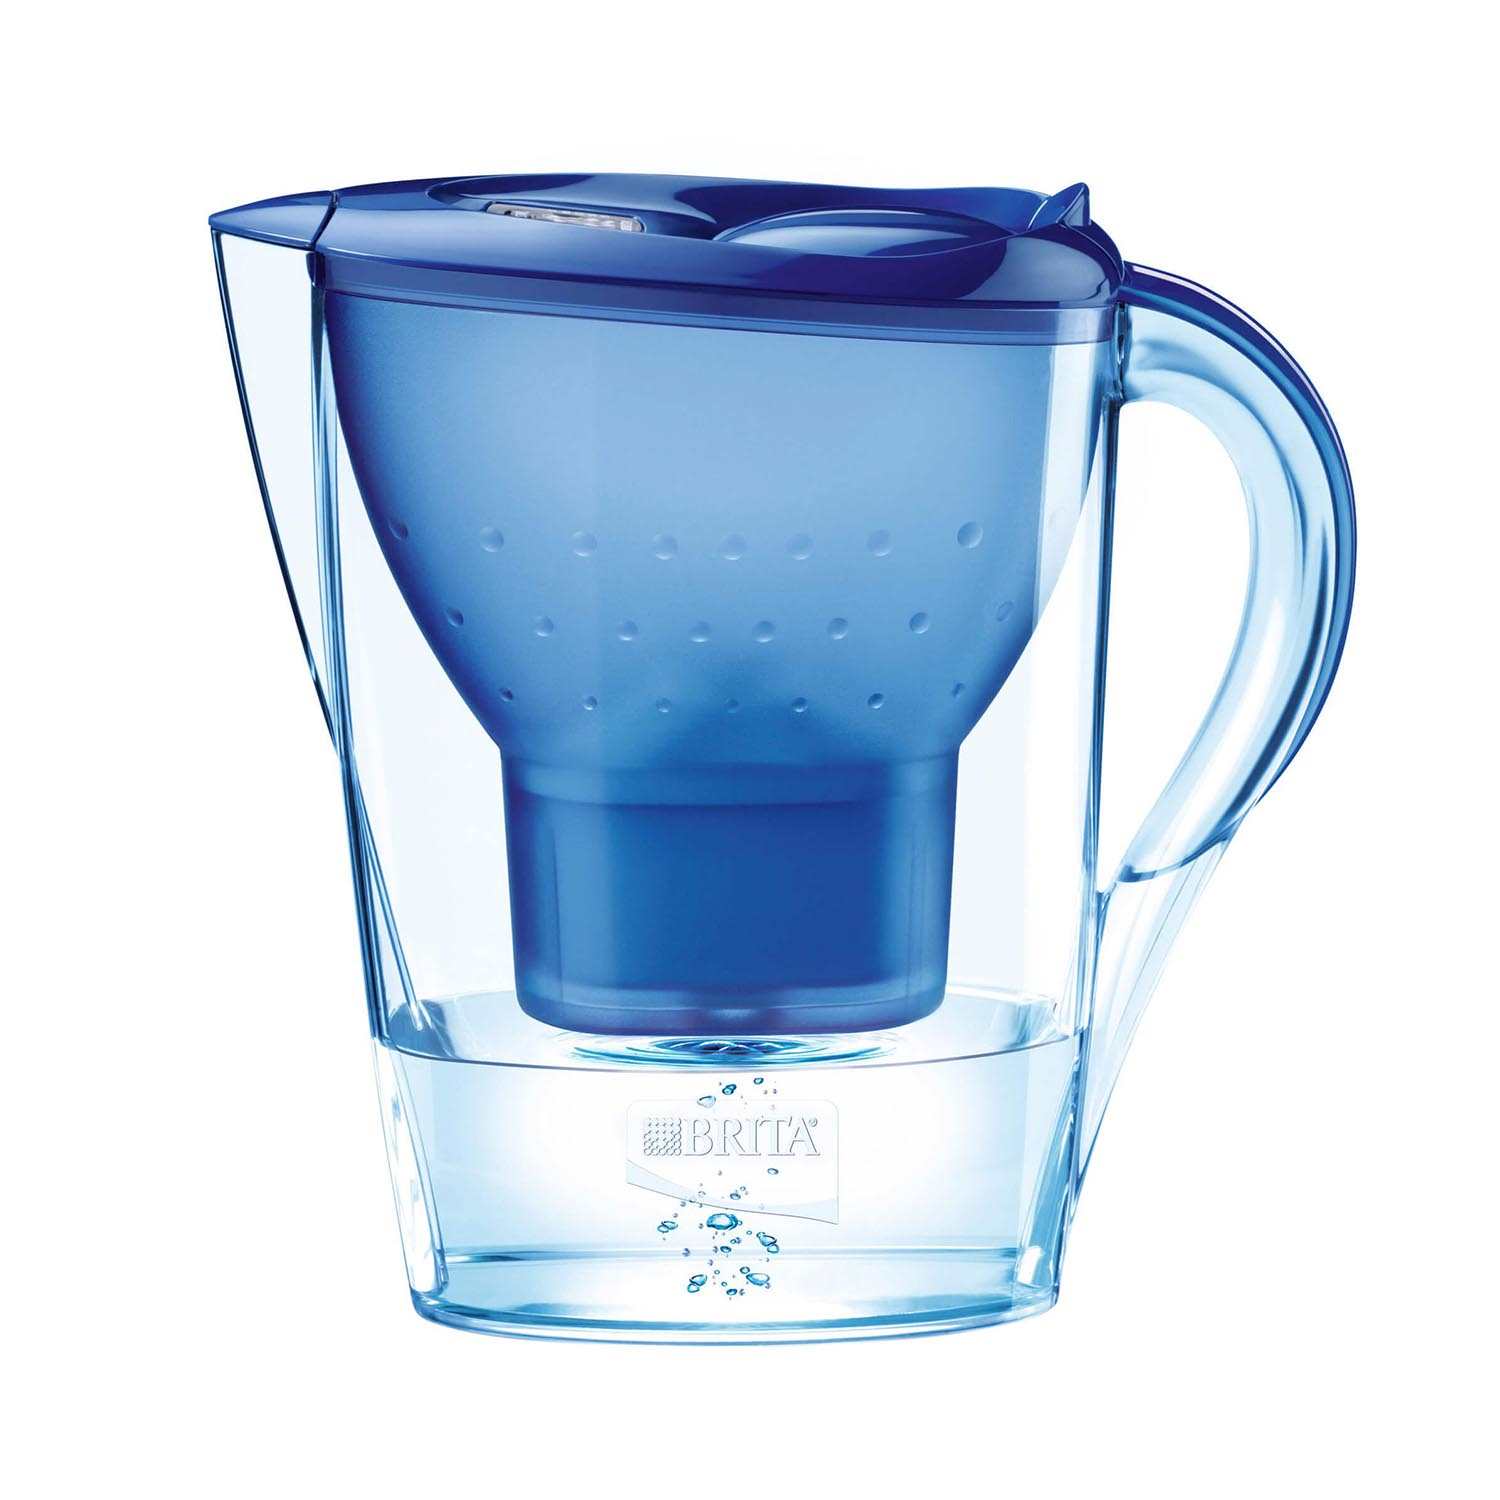 Brita Wasserfilter Cool blau 1,4 l kaufen